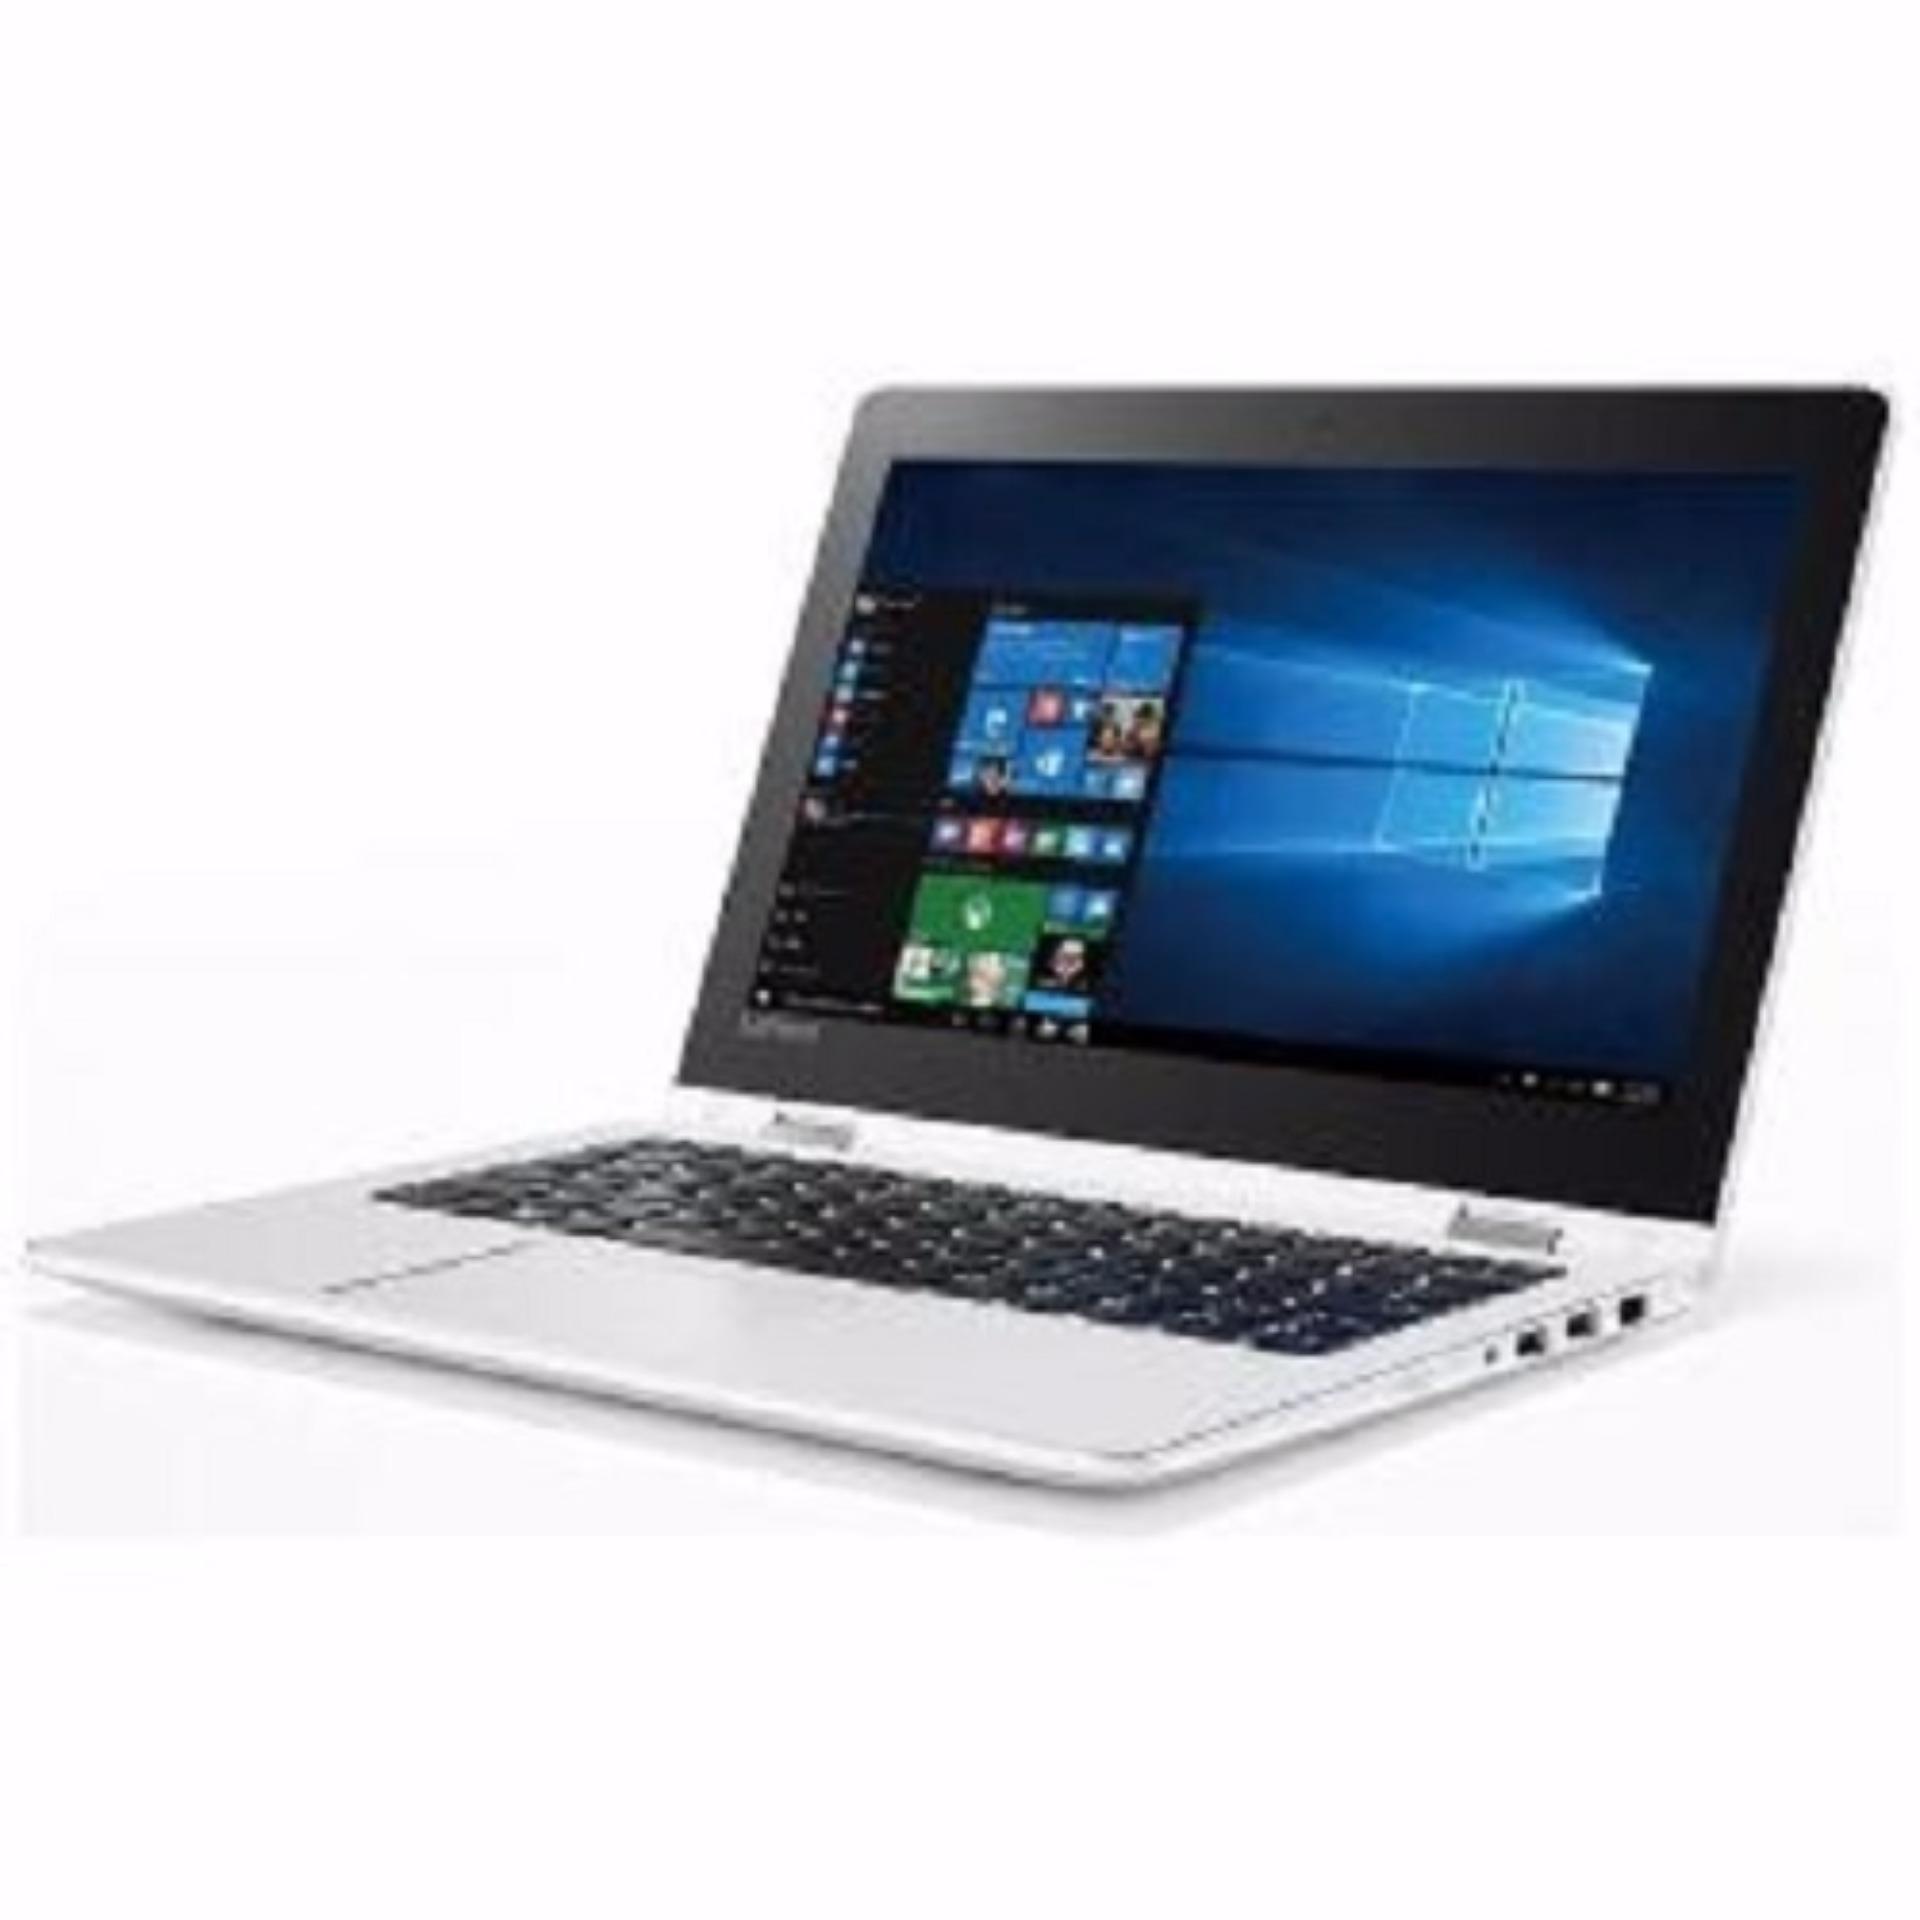 Lenovo Yoga 310 Notebook - [11.6 Inch Touchscreen/ Intel N3350/ RAM 4GB/ HDD 1TB/ Wind 10]